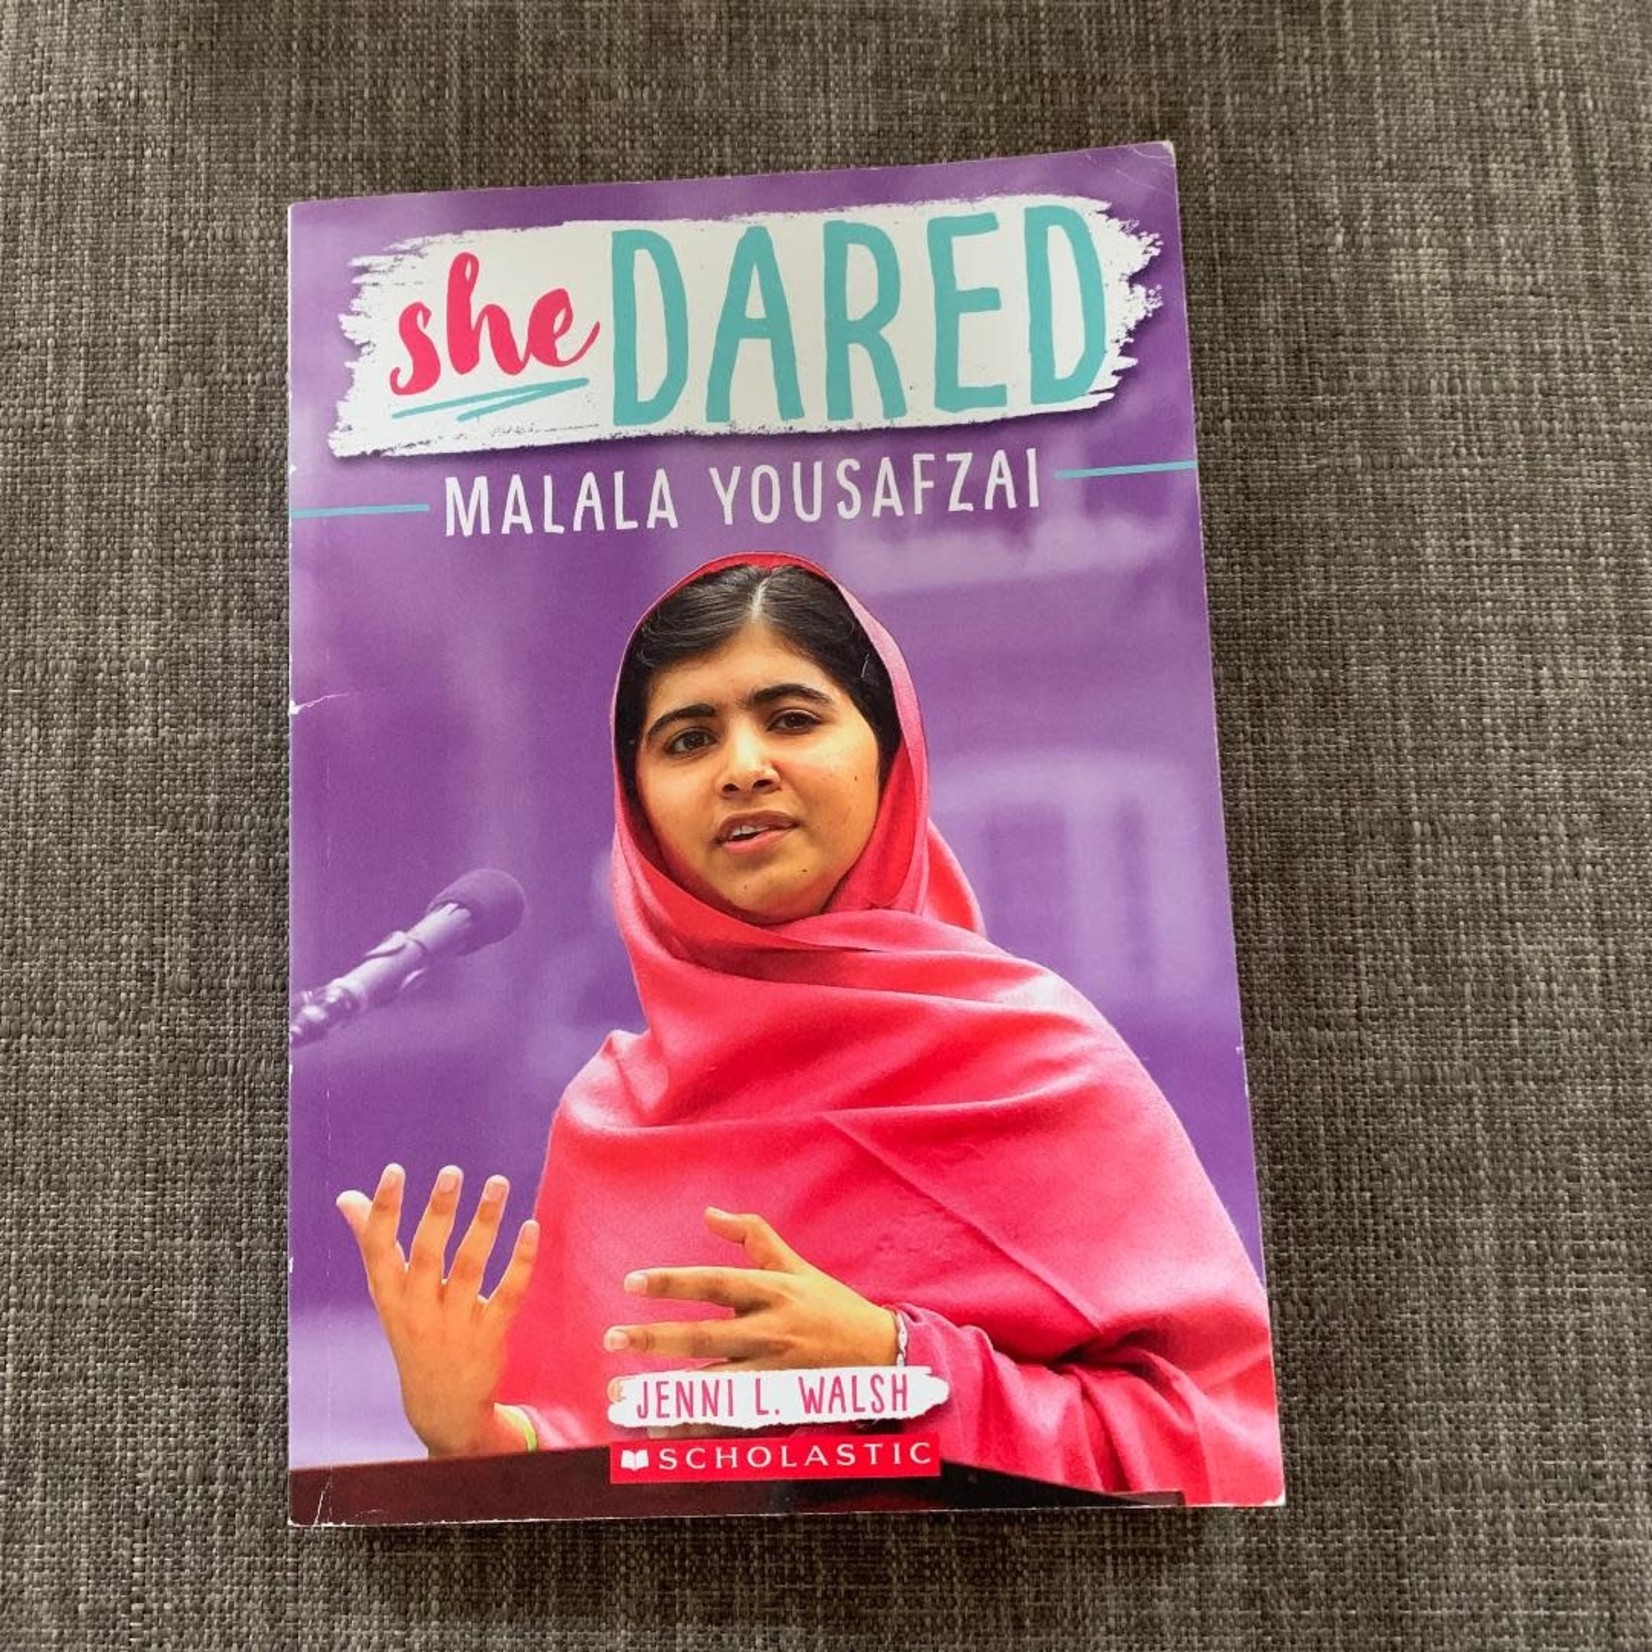 She Dared - Malala Yousafzai